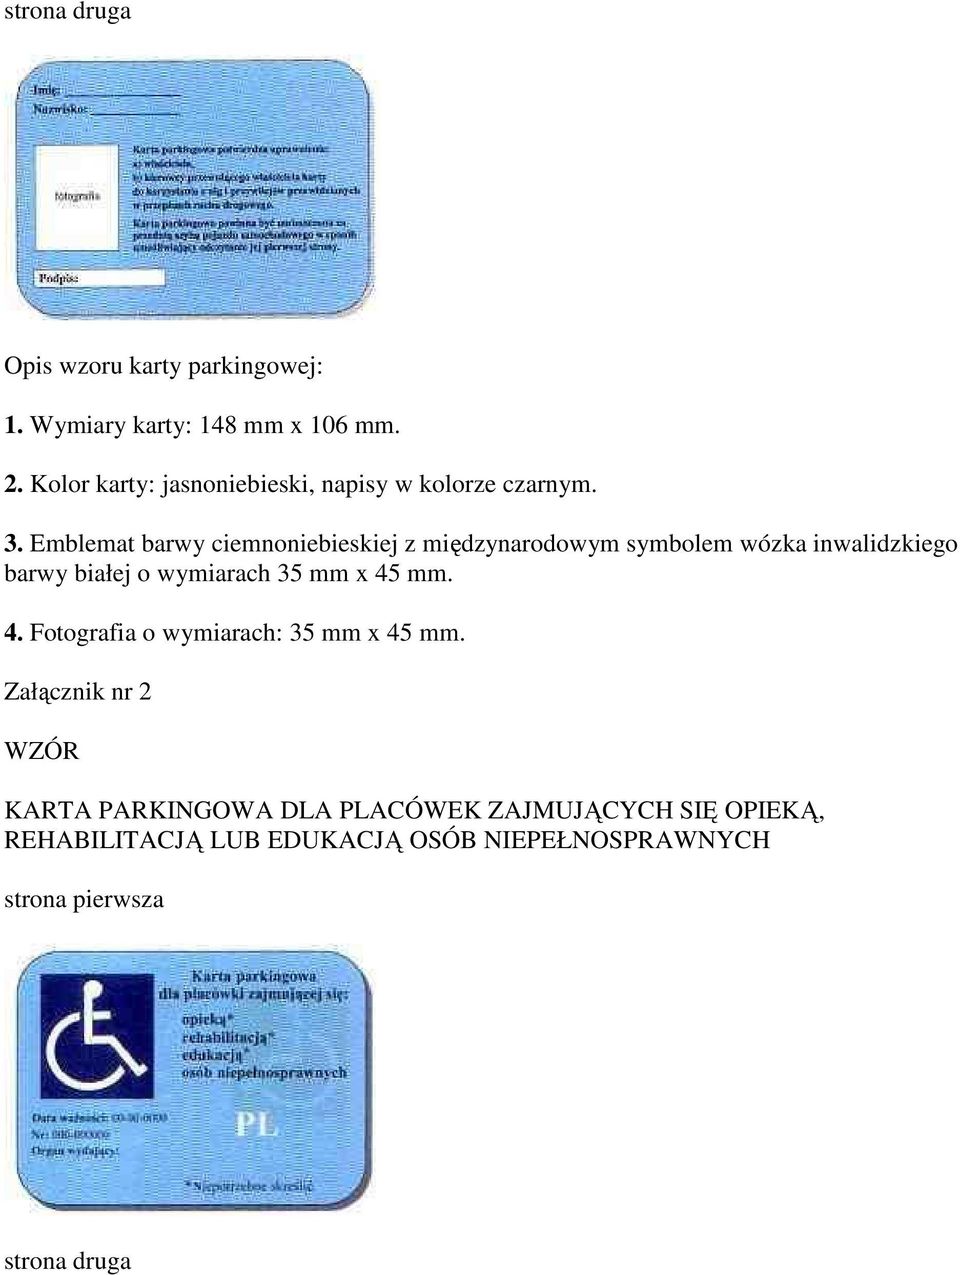 Emblemat barwy ciemnoniebieskiej z międzynarodowym symbolem wózka inwalidzkiego barwy białej o wymiarach 35 mm x